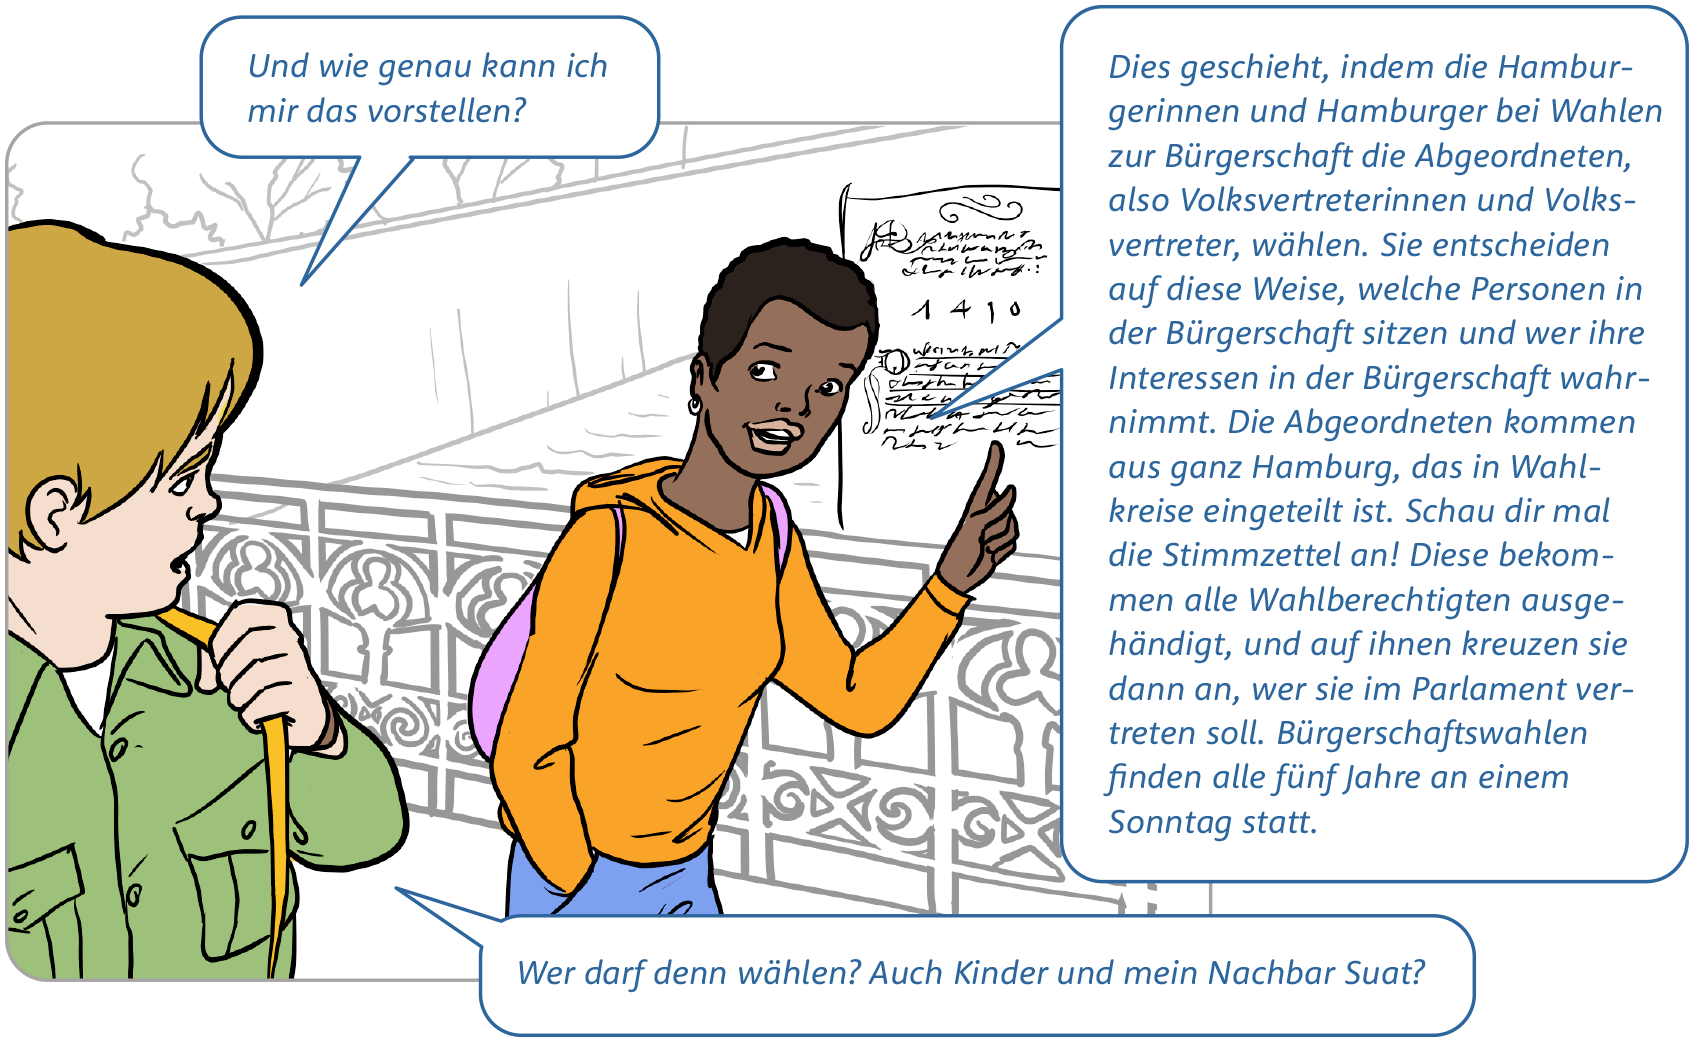 Comic Bild 2: Die Jugendlichen sind immer noch auf der Brücke und unterhalten sich. Das Mädchen (Caro) hebt erklärend den Zeigefinger. (Den Text aus den Sprechblasen findest du am Ende der Bildstrecke.)